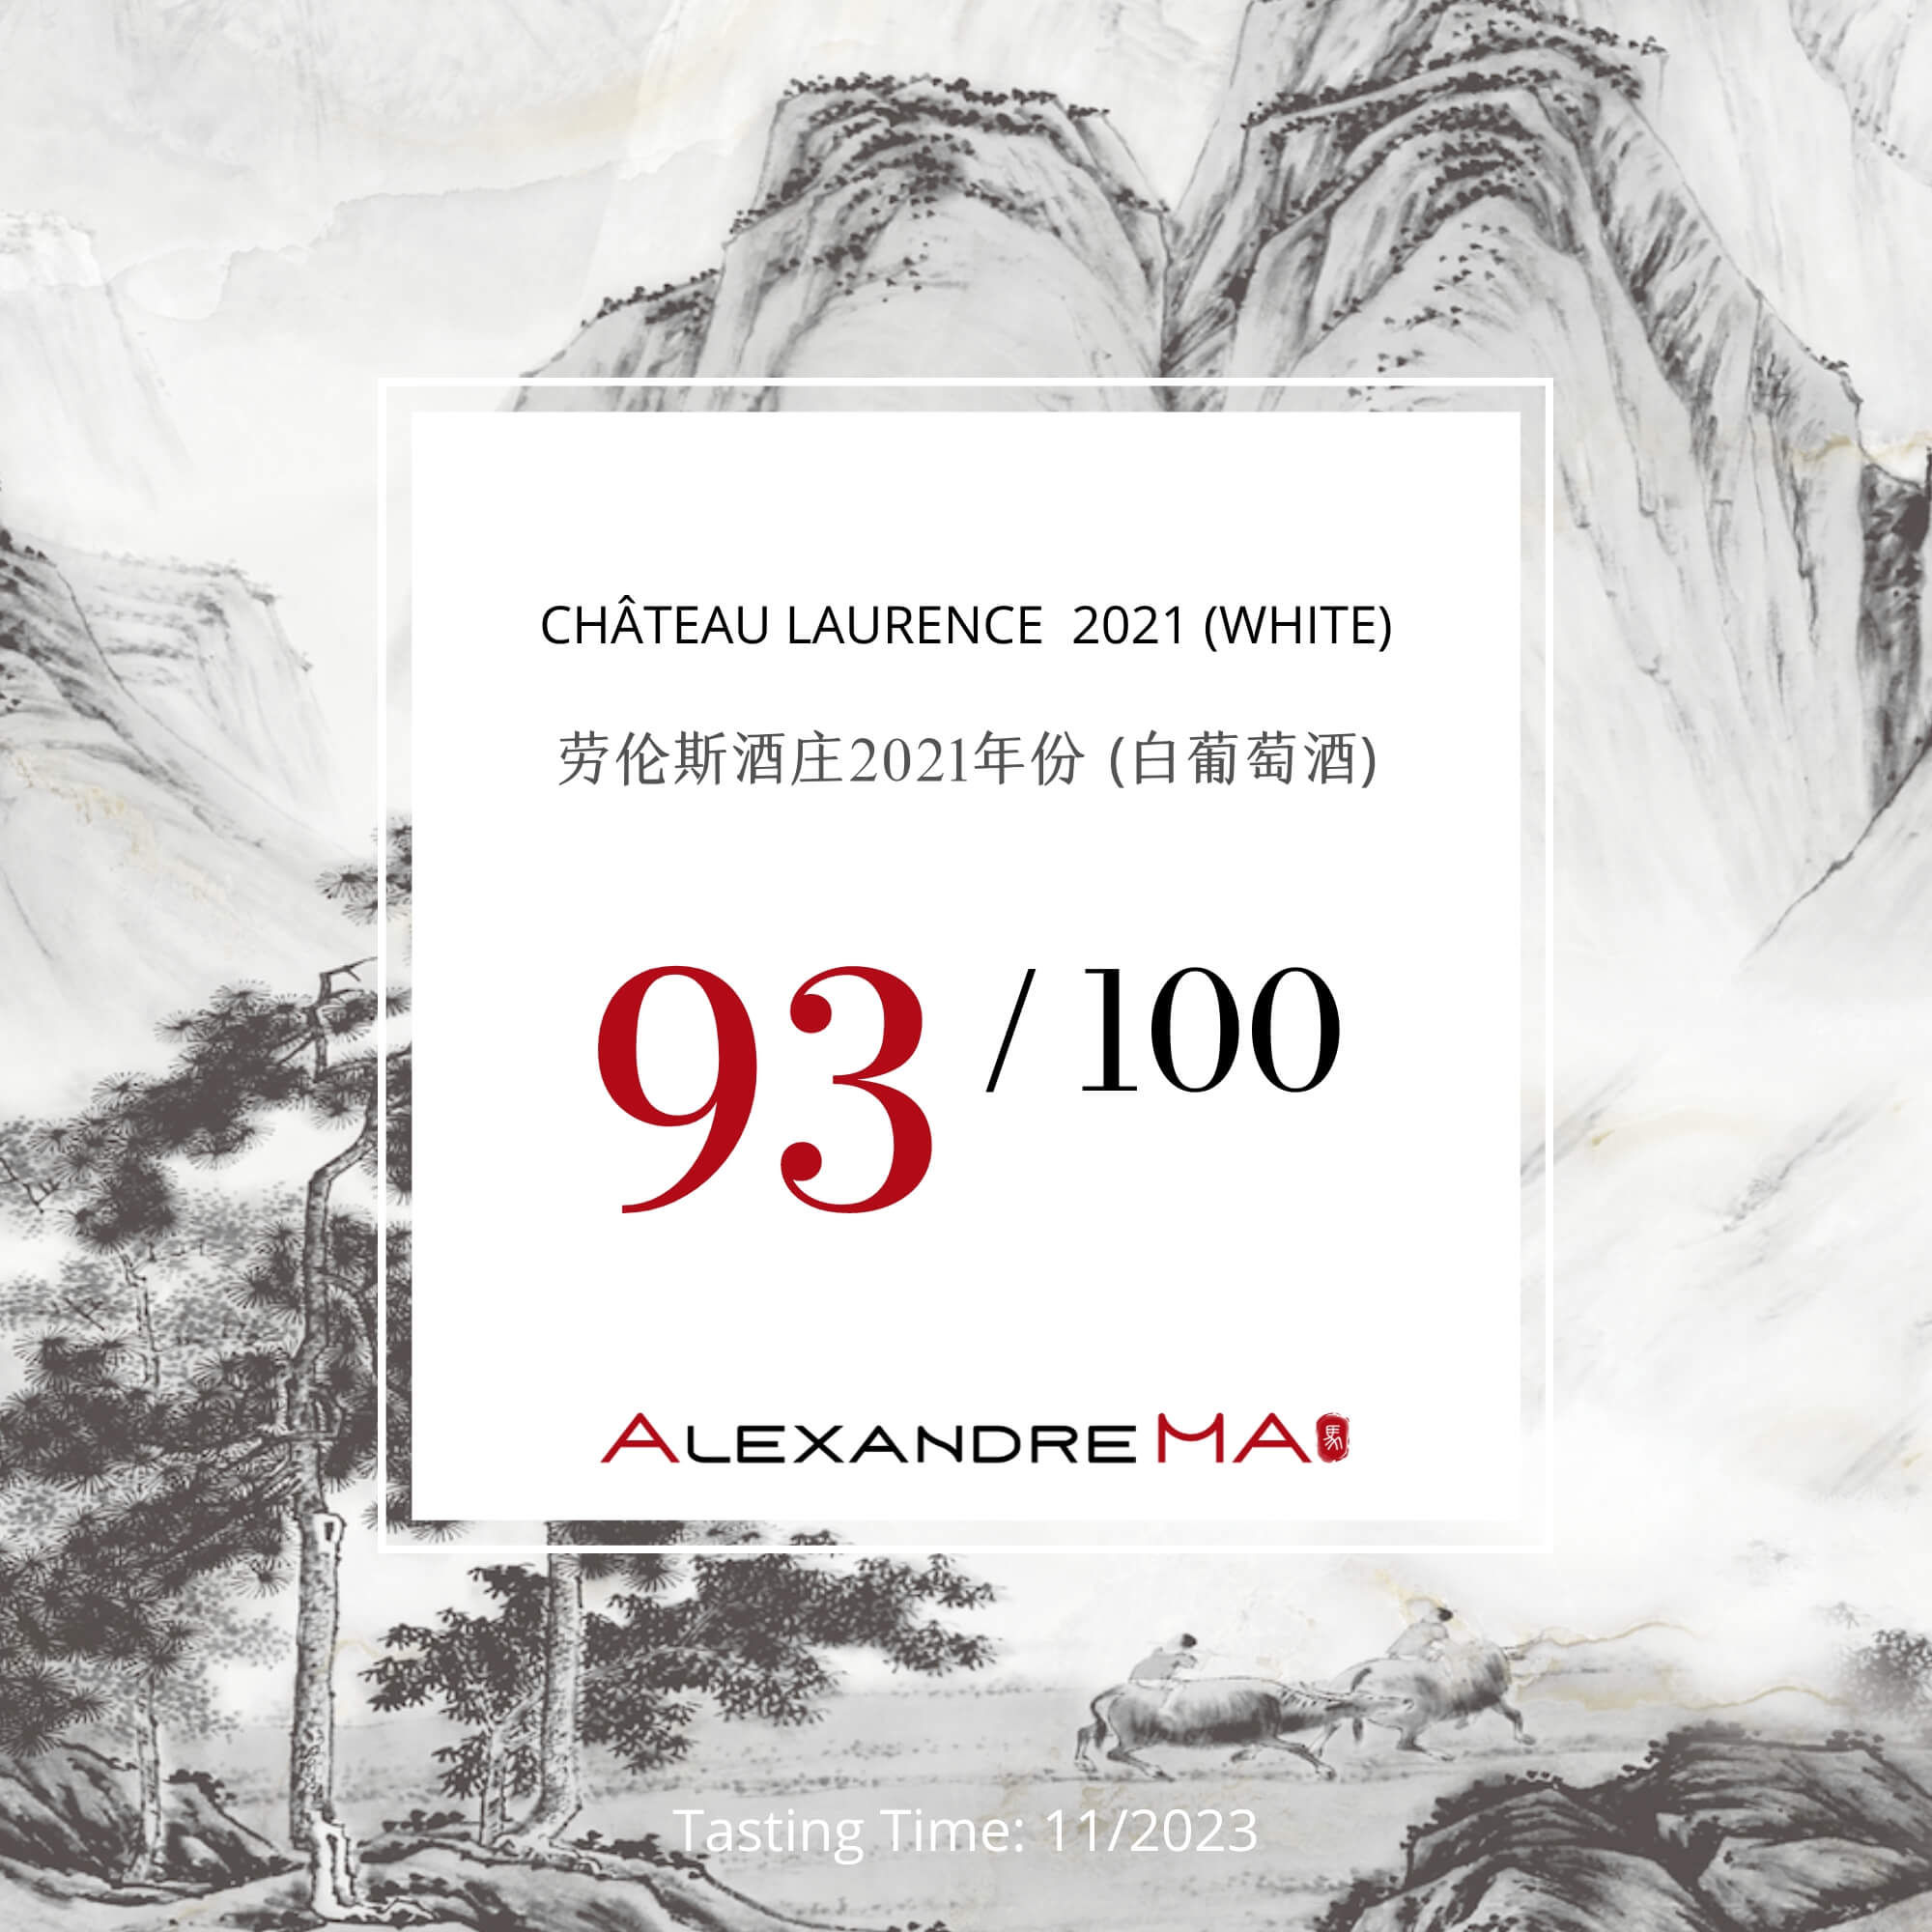 Château Laurence 2021-White - Alexandre MA